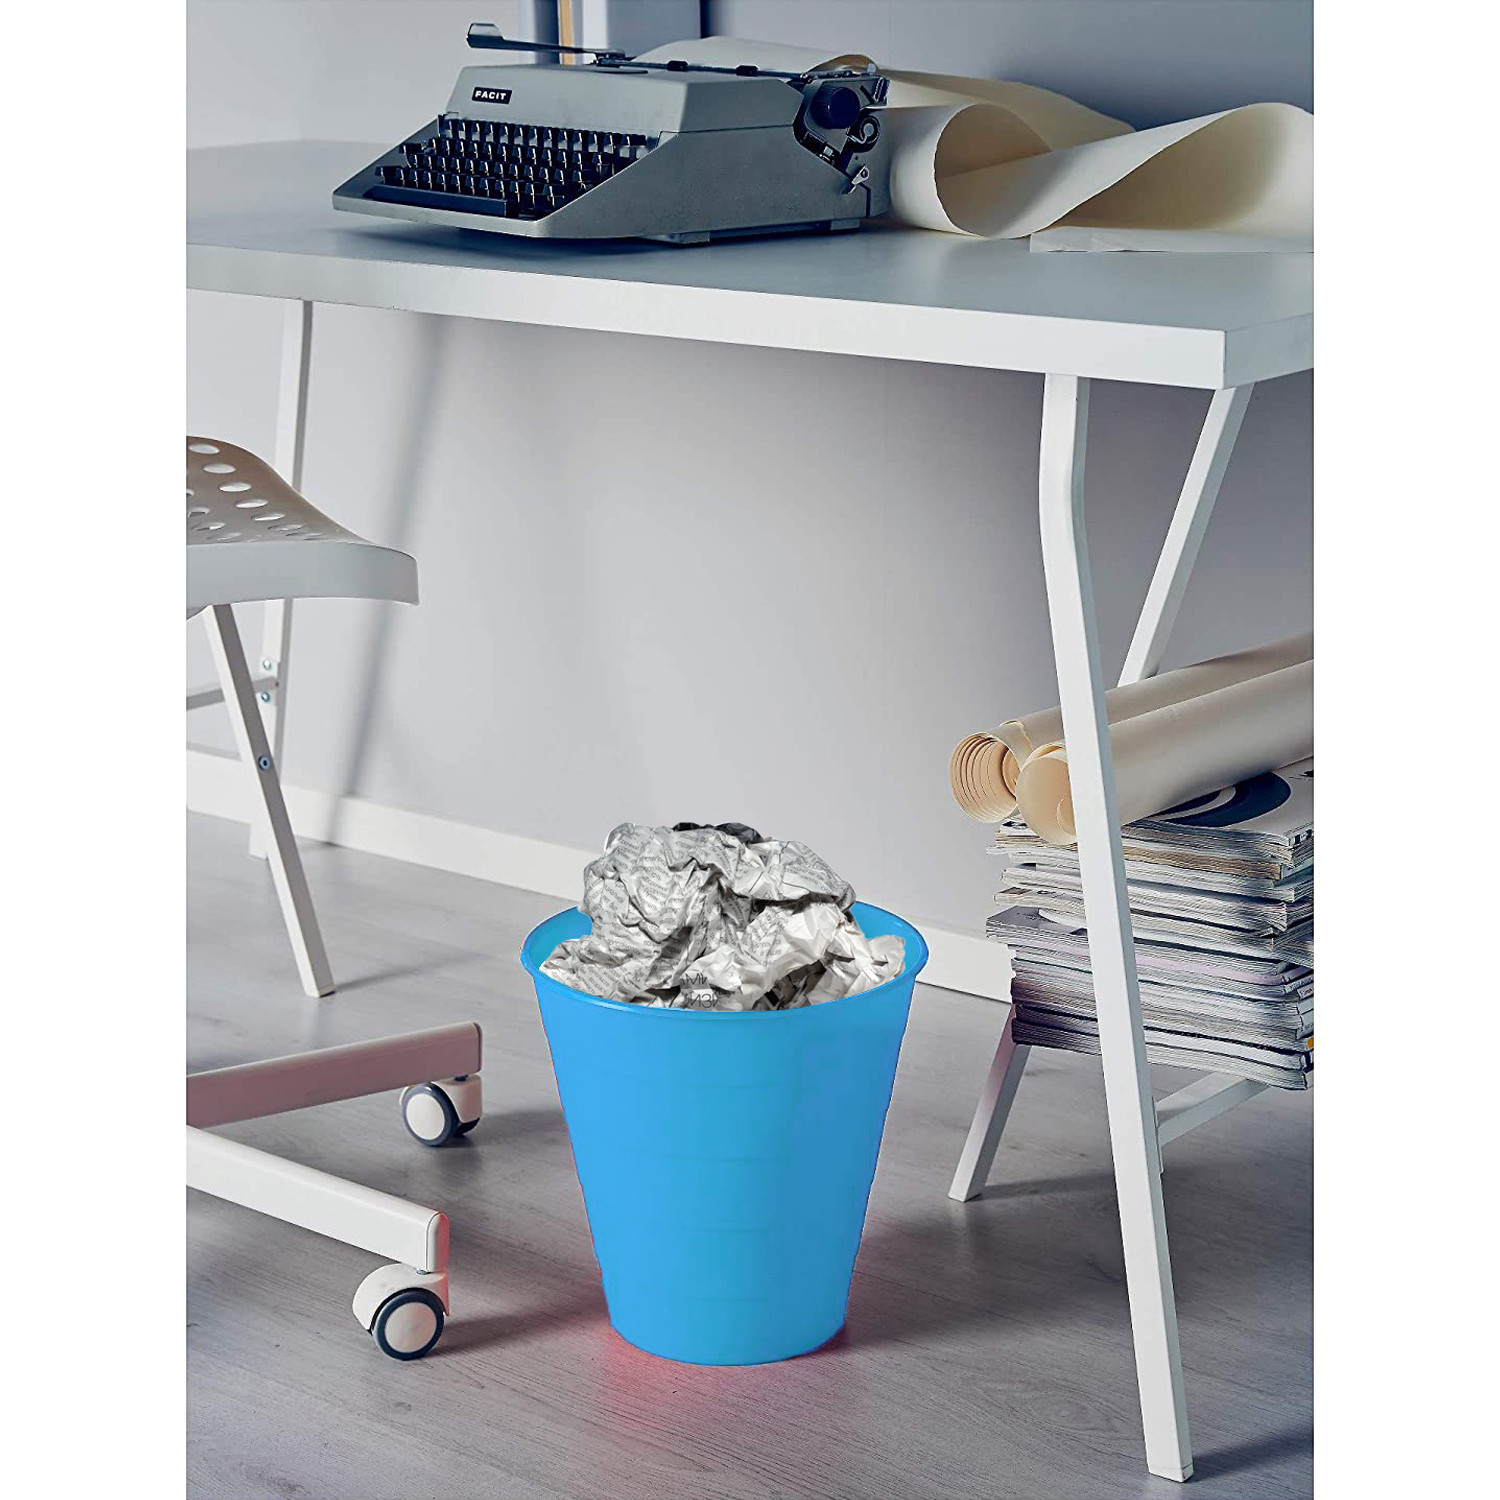 Kuber Industries Dustbin|Plastic Dustbin|Dustbin for Kitchen|Dustbin For Bedroom,Hall|Dustbin For office|8 Litre Dustbin (Sky Blue)